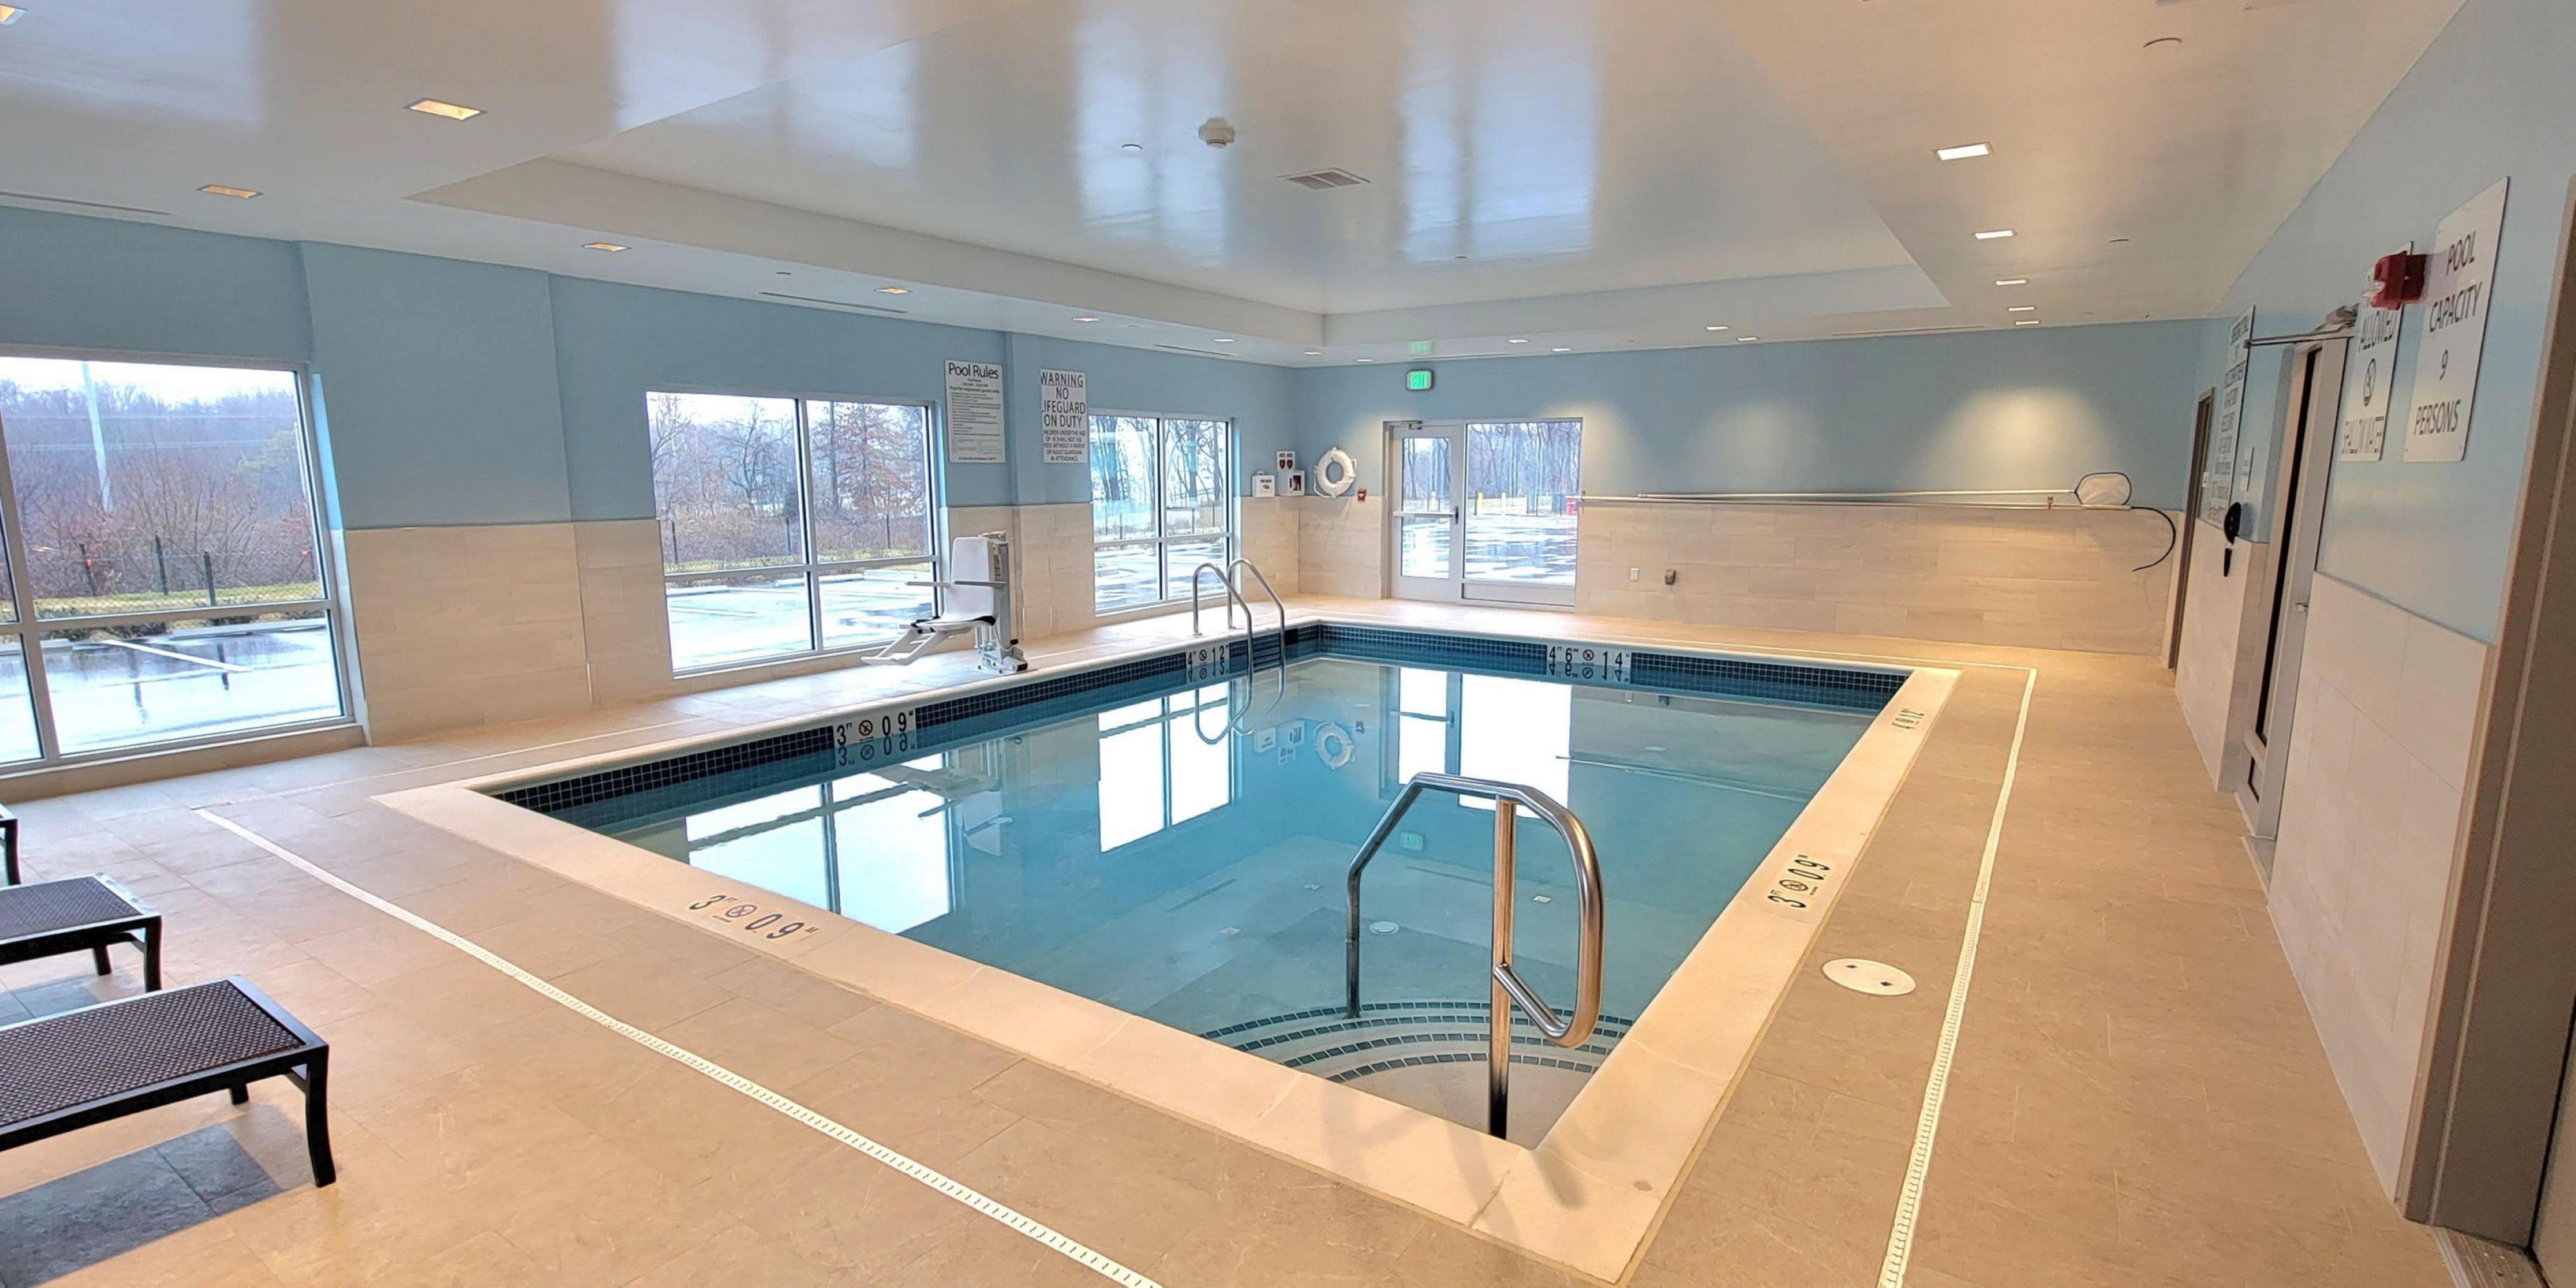 Notre hôtel vous propose une piscine intérieure chauffée.